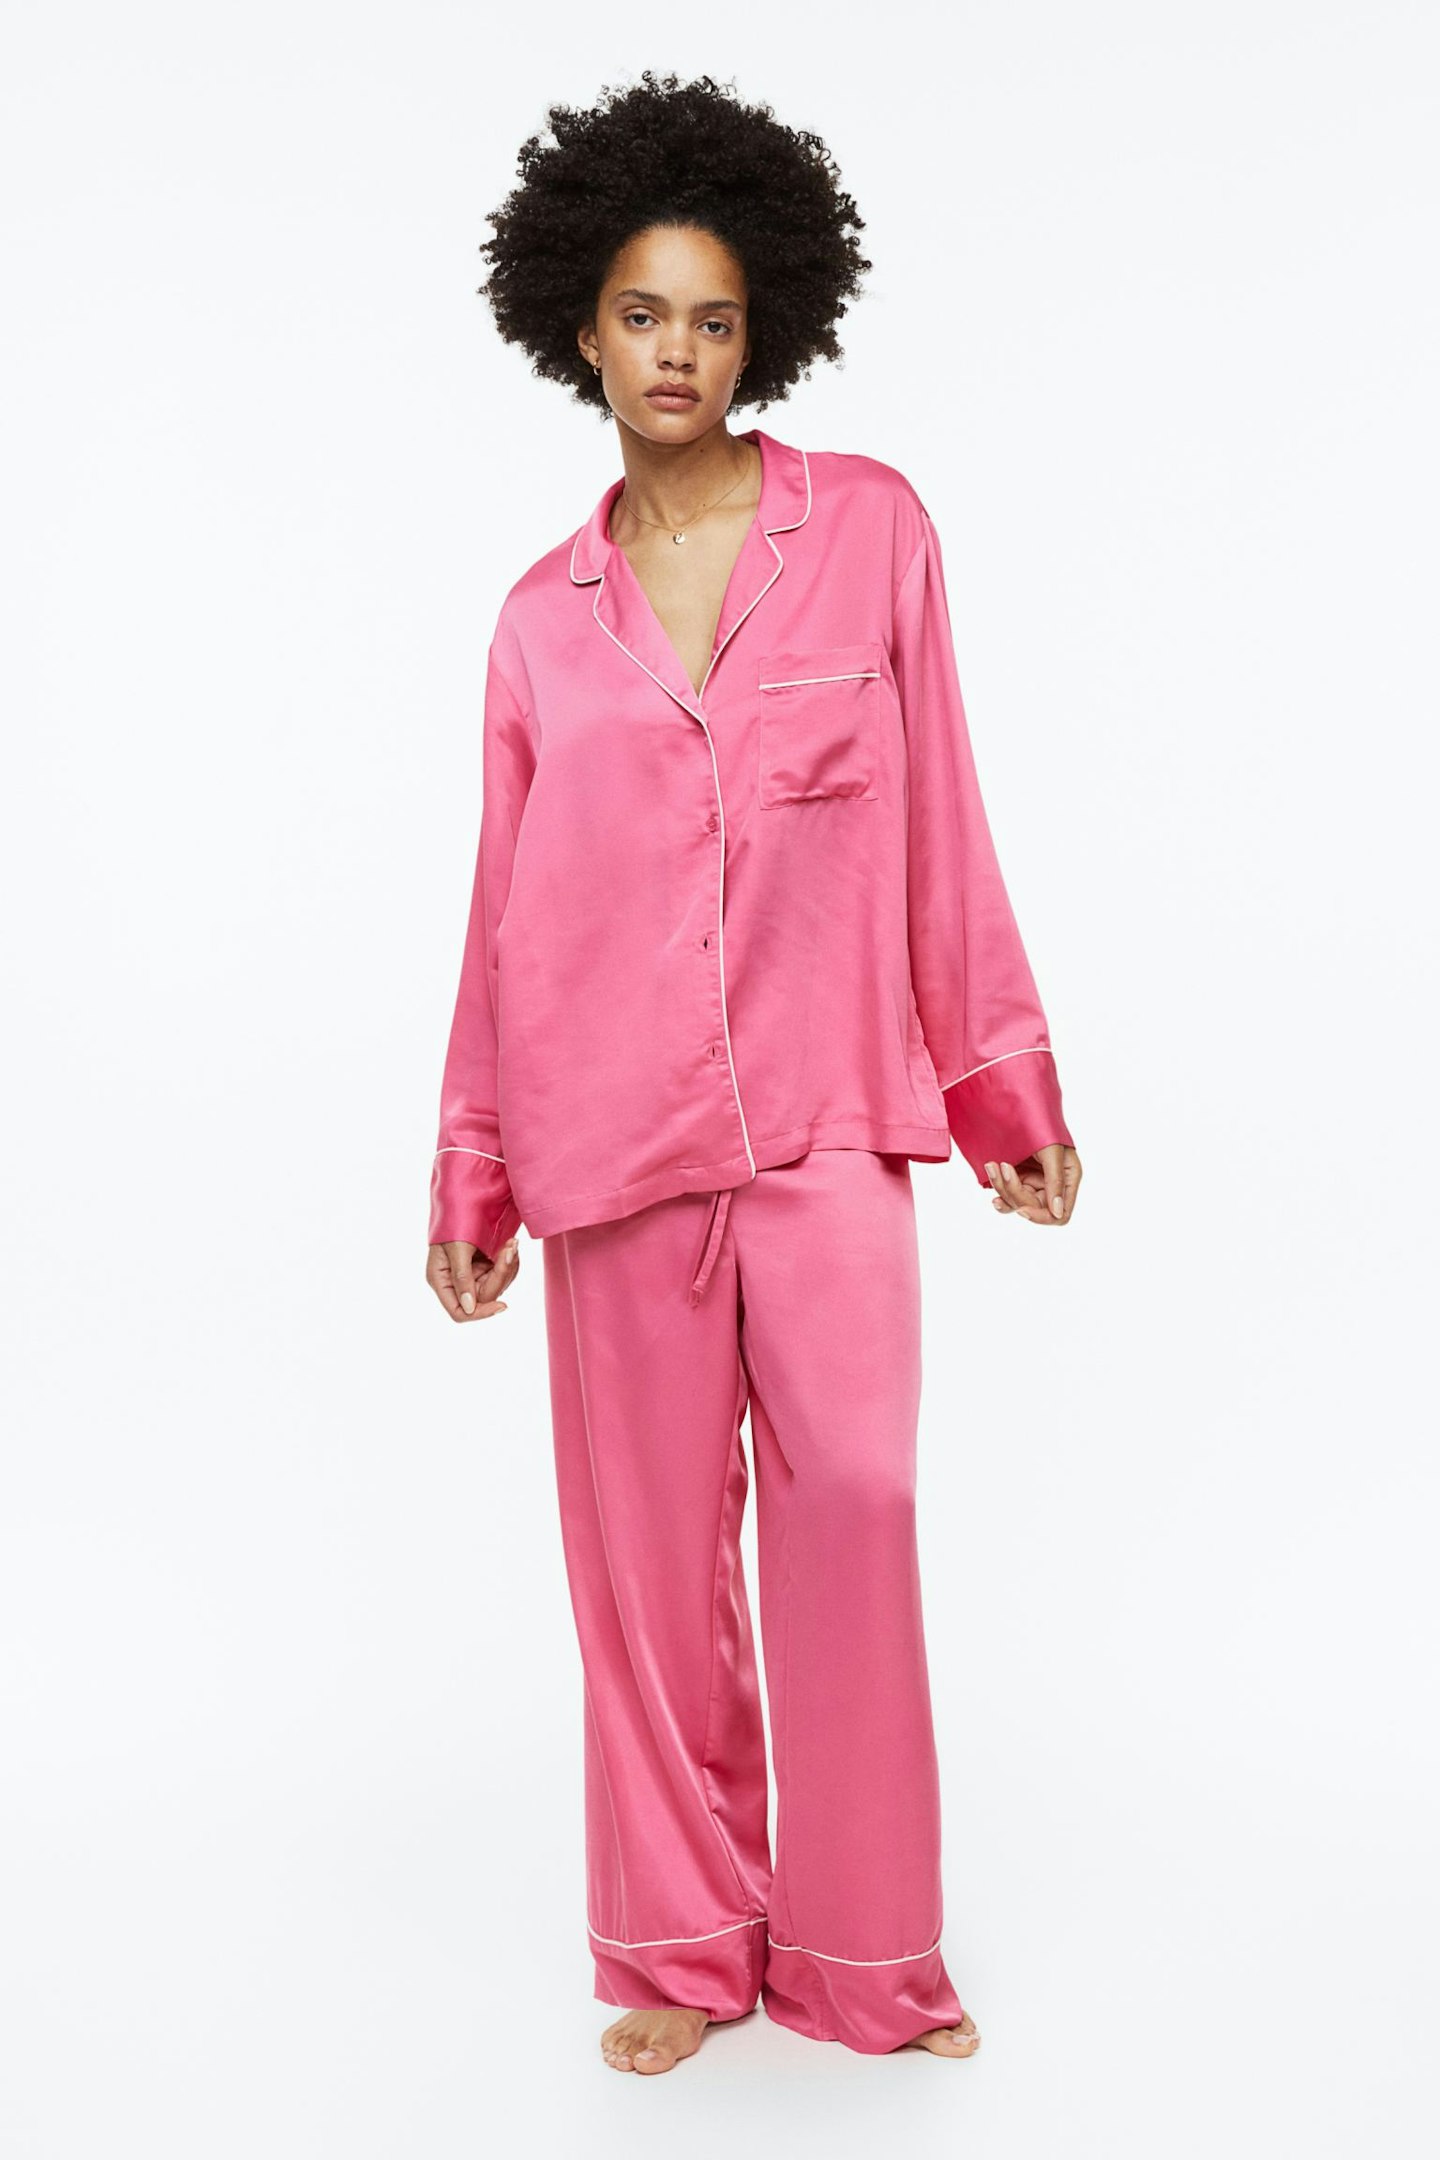 H&M Satin Pyjama Shirt and Bottoms